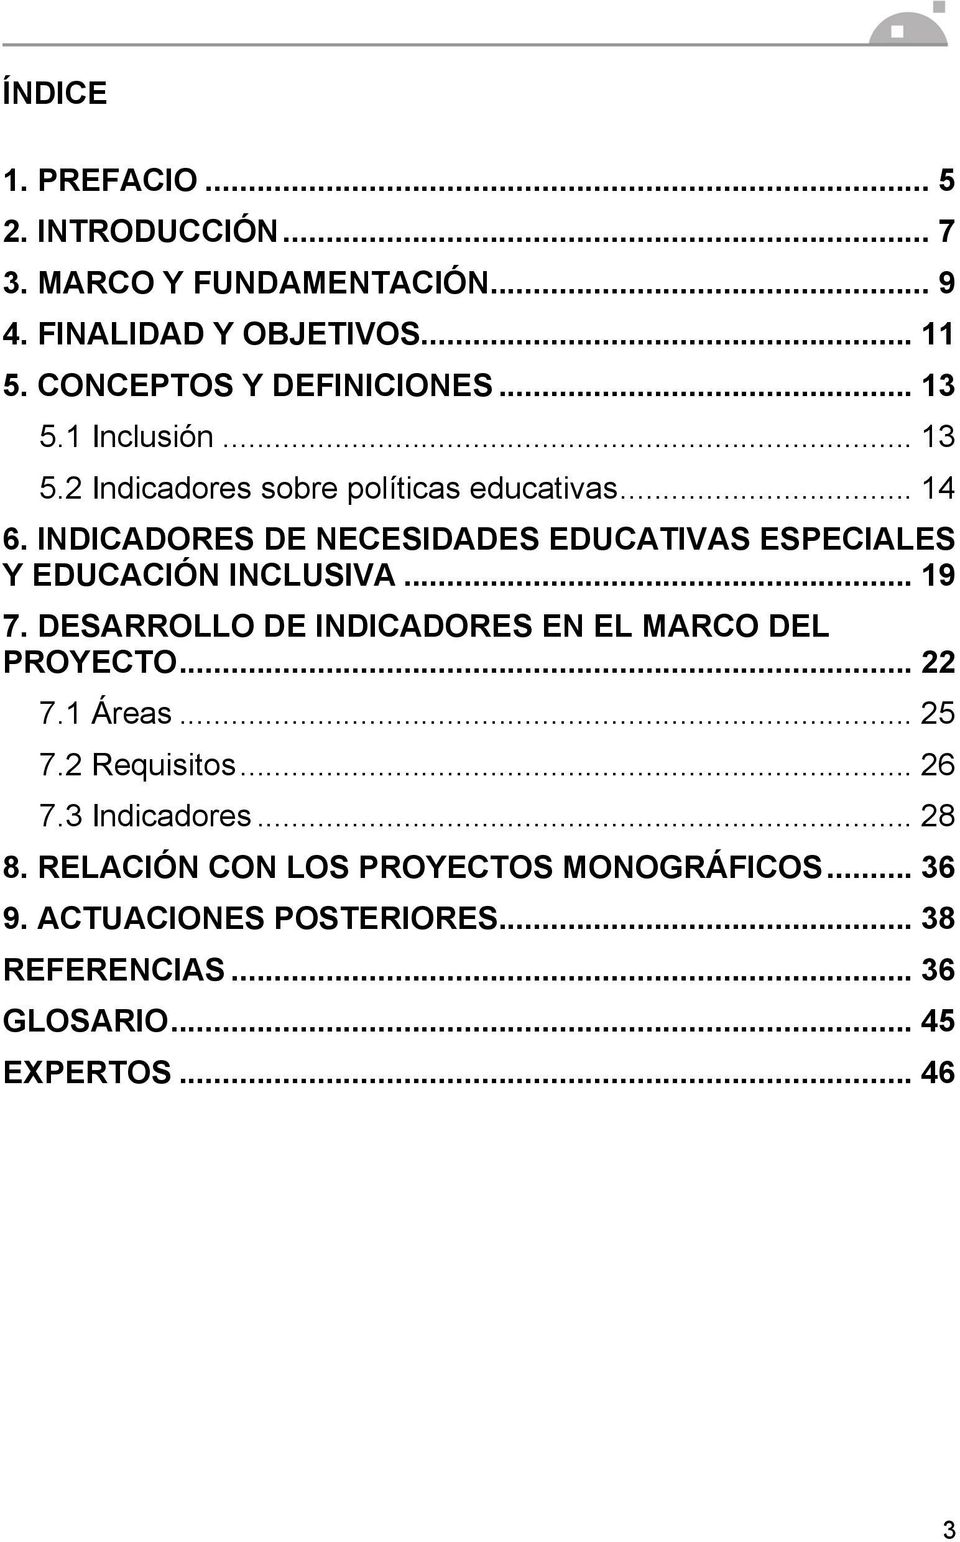 INDICADORES DE NECESIDADES EDUCATIVAS ESPECIALES Y EDUCACIÓN INCLUSIVA... 19 7. DESARROLLO DE INDICADORES EN EL MARCO DEL PROYECTO.